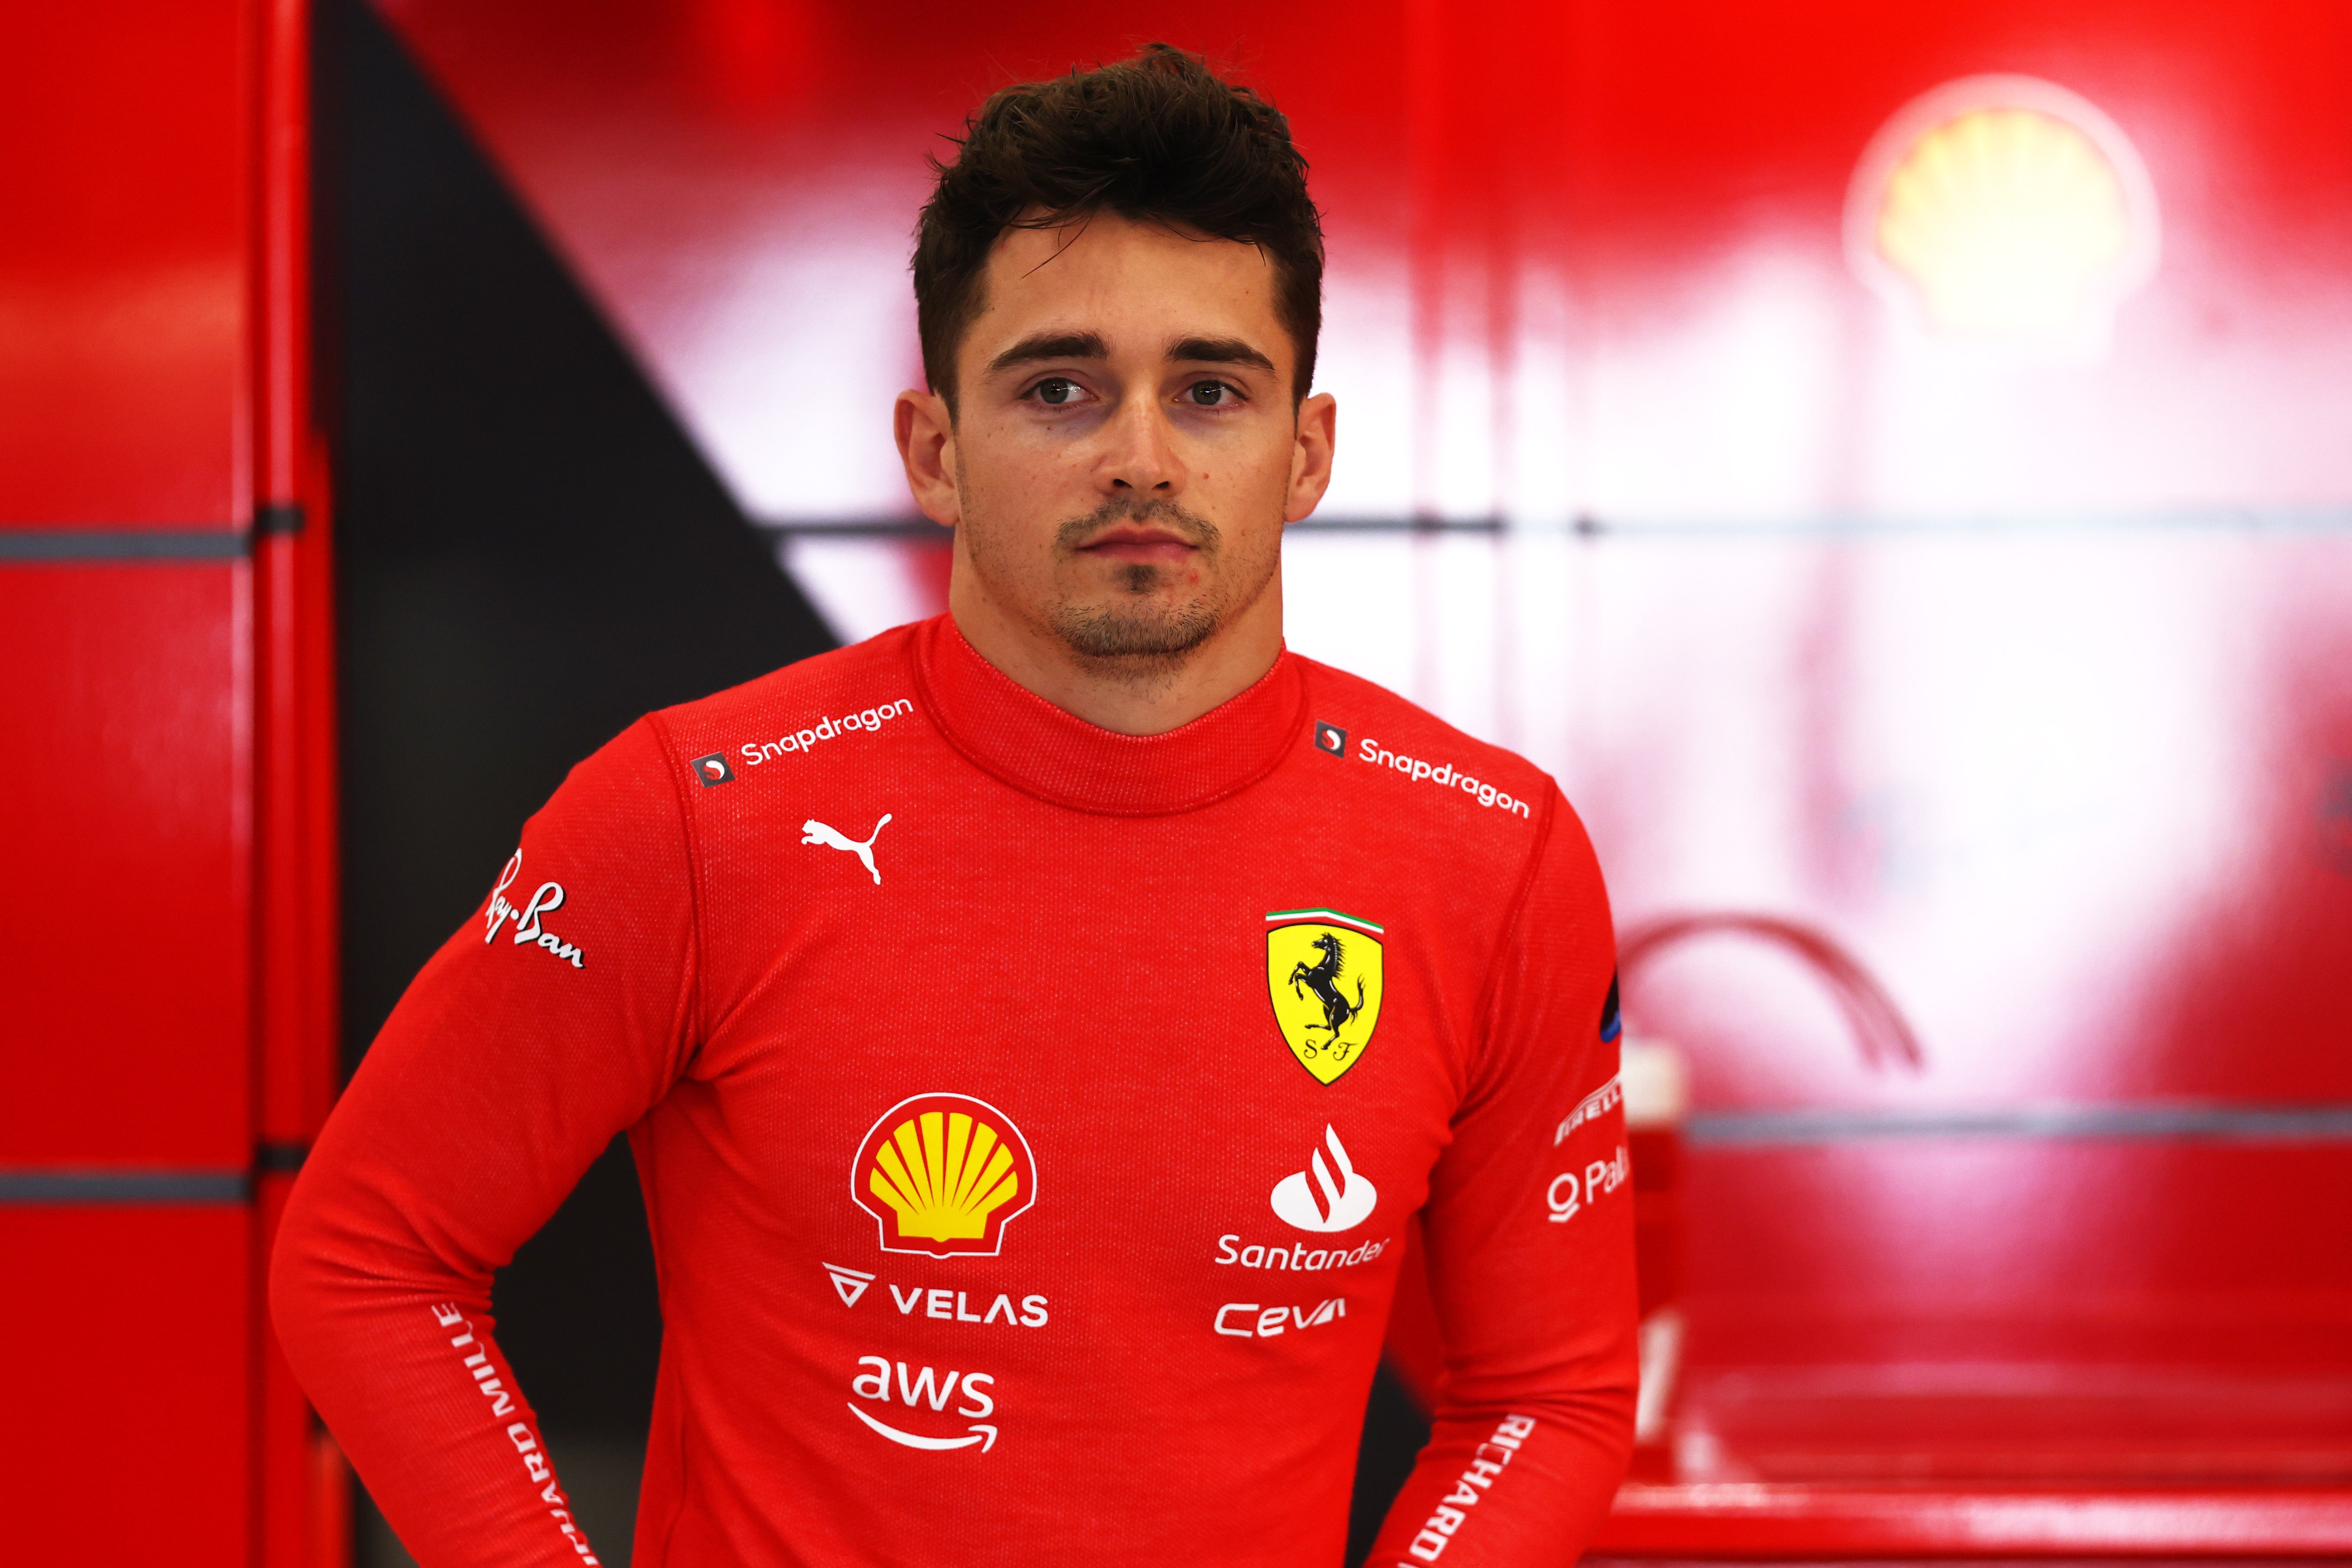 Charles Leclerc speaks on Ferrari's long term outlook